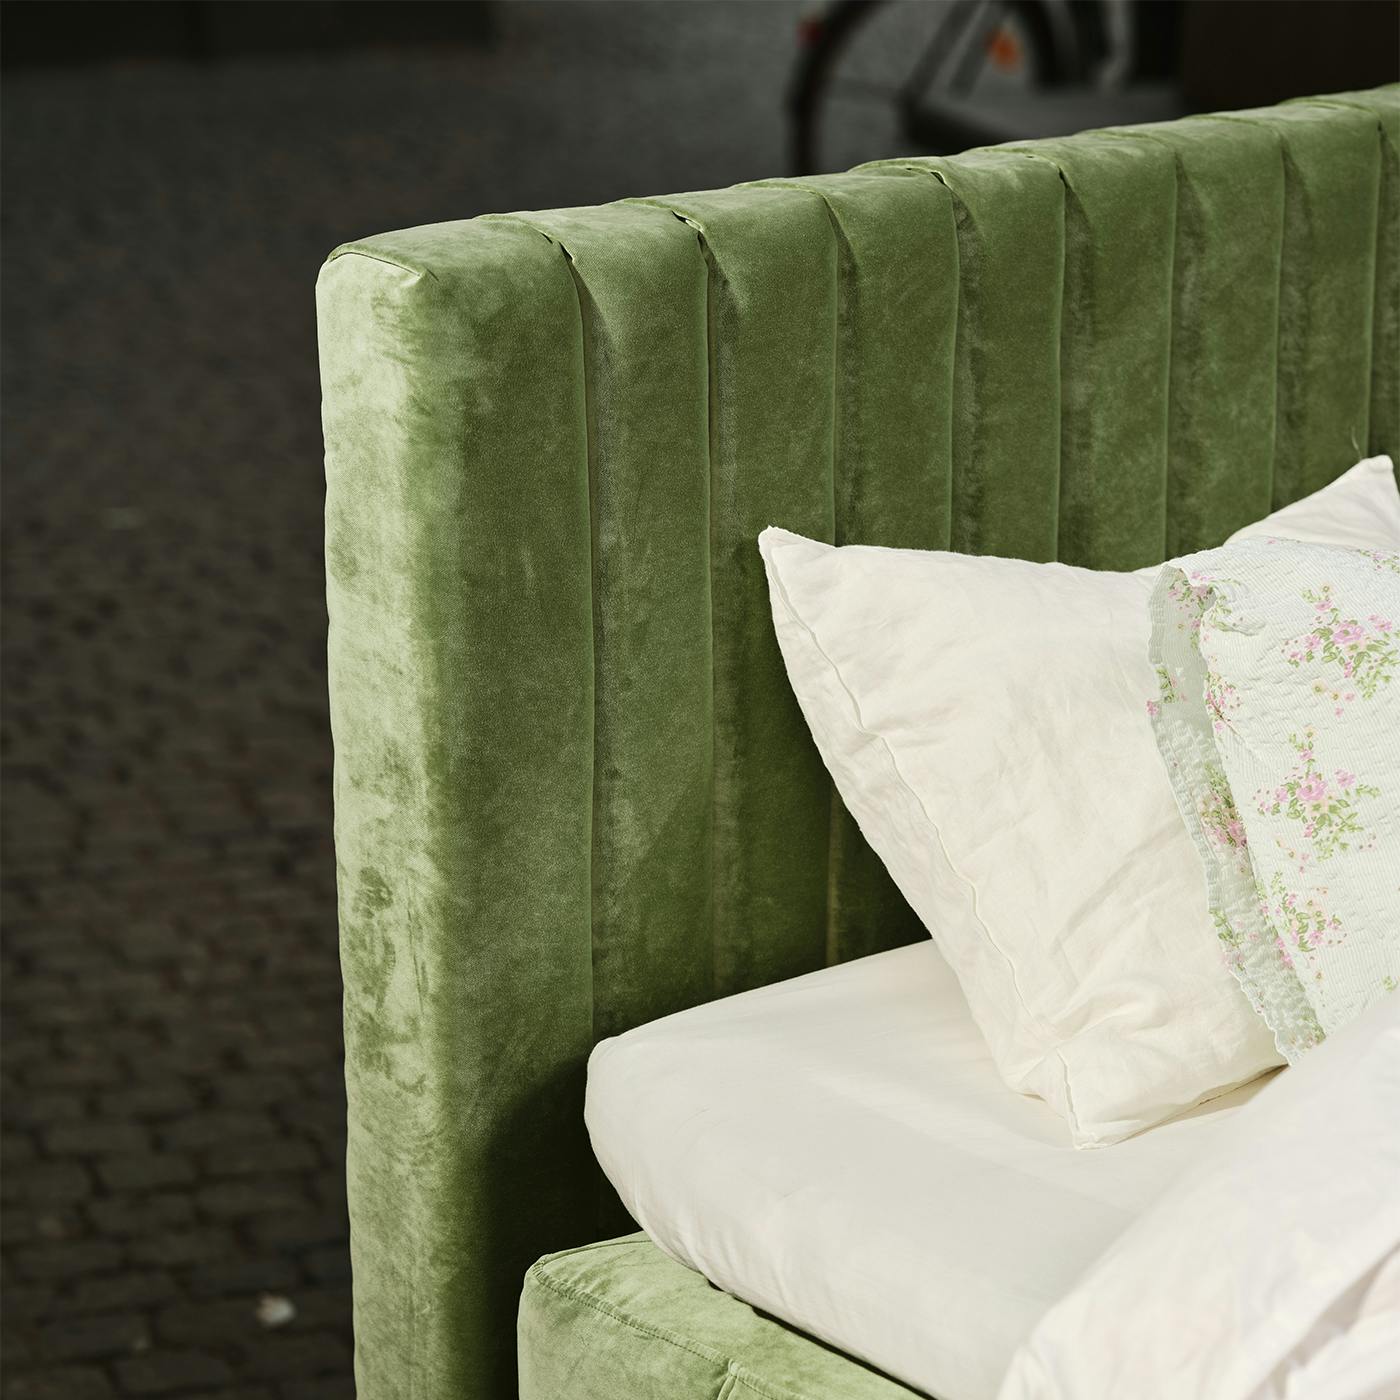 Ribbad sänggavel, 180cm bred, i en tålig grön polyestersammet. 